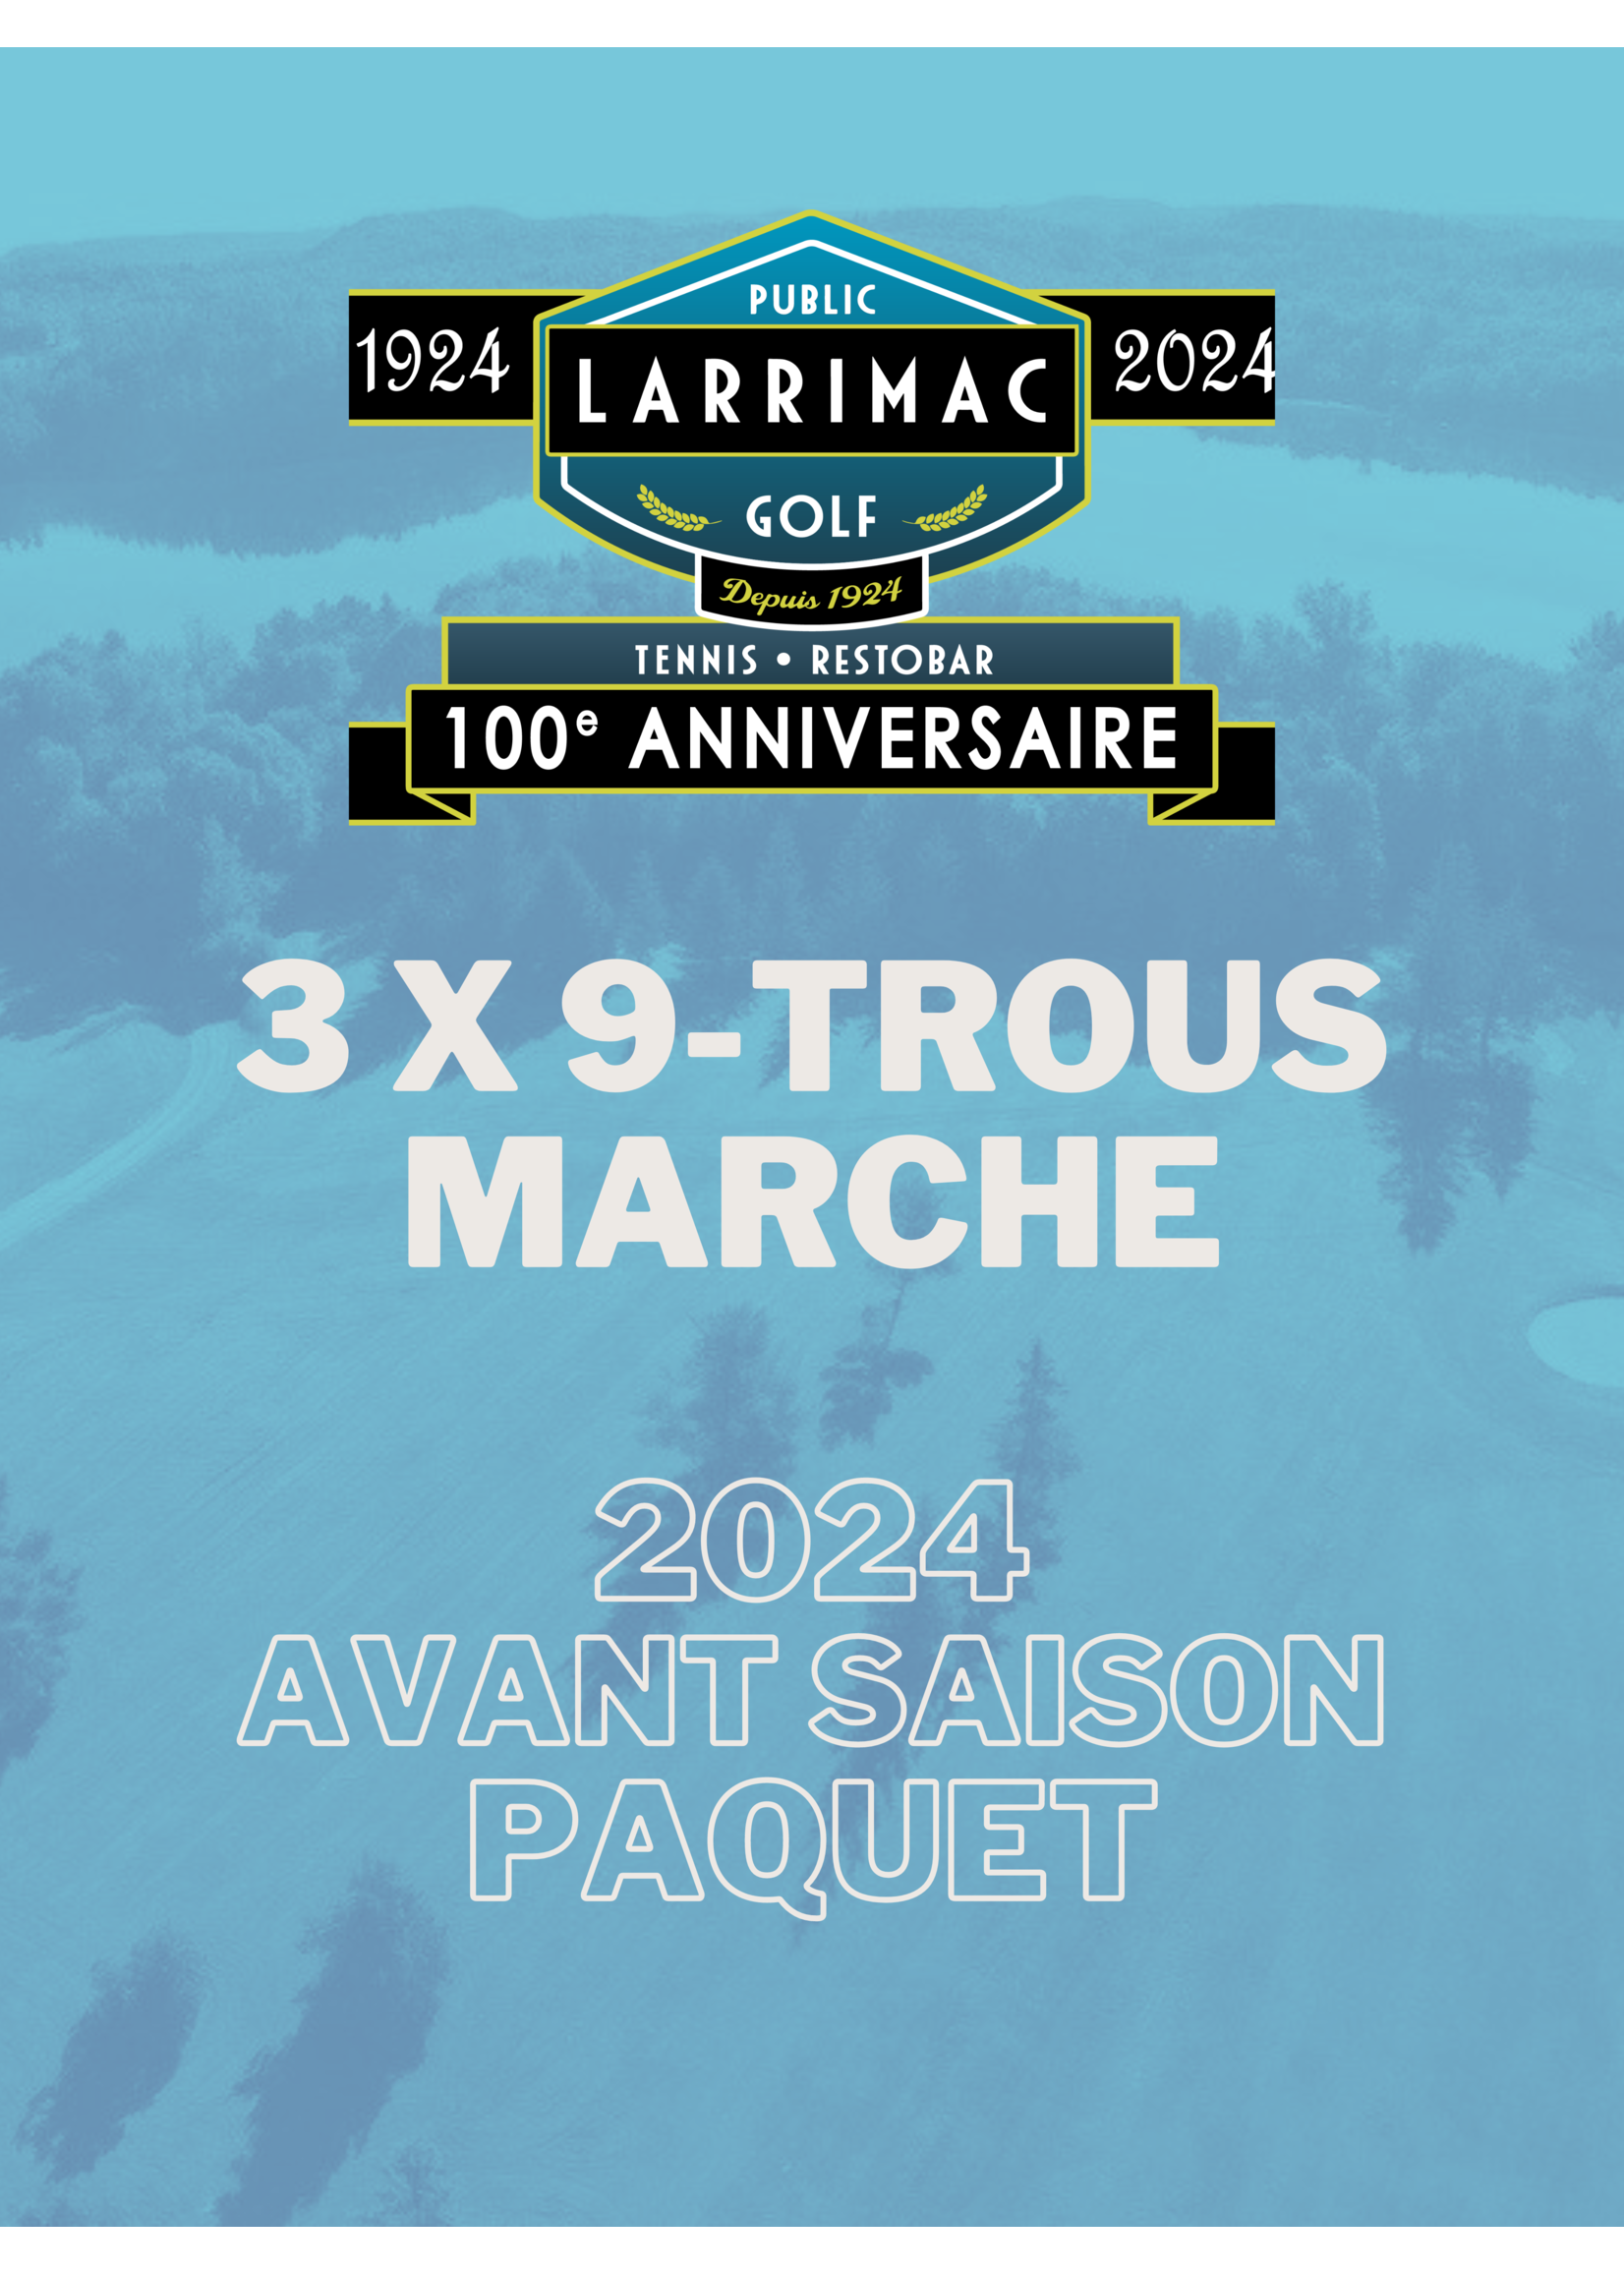 2024 packages 3x 9 Trous Marche Paquet (Avant-saison 2024 15% de réduction !)